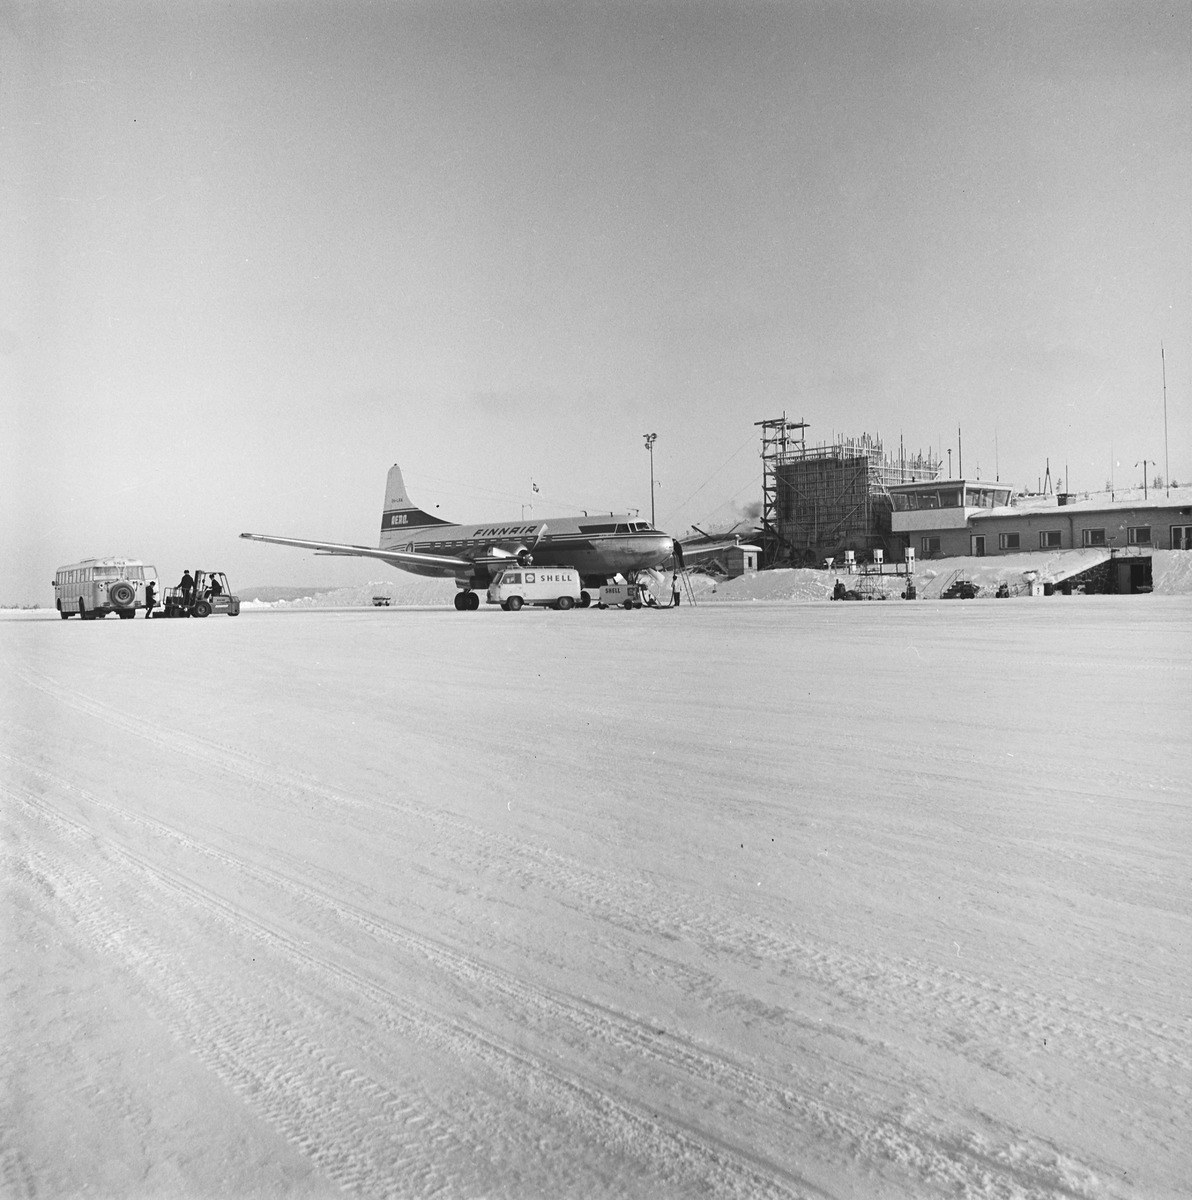 Talvinen näkymä, jossa lentokone kentällä tankattavana. Koneen edessä on pakettiauto ja läheisyydessä linja-auto sekä matkalaukkuja siirtävä ajoneuvo. Taustalla matala lentoasemarakennus, josta osa on vielä rakenteilla.